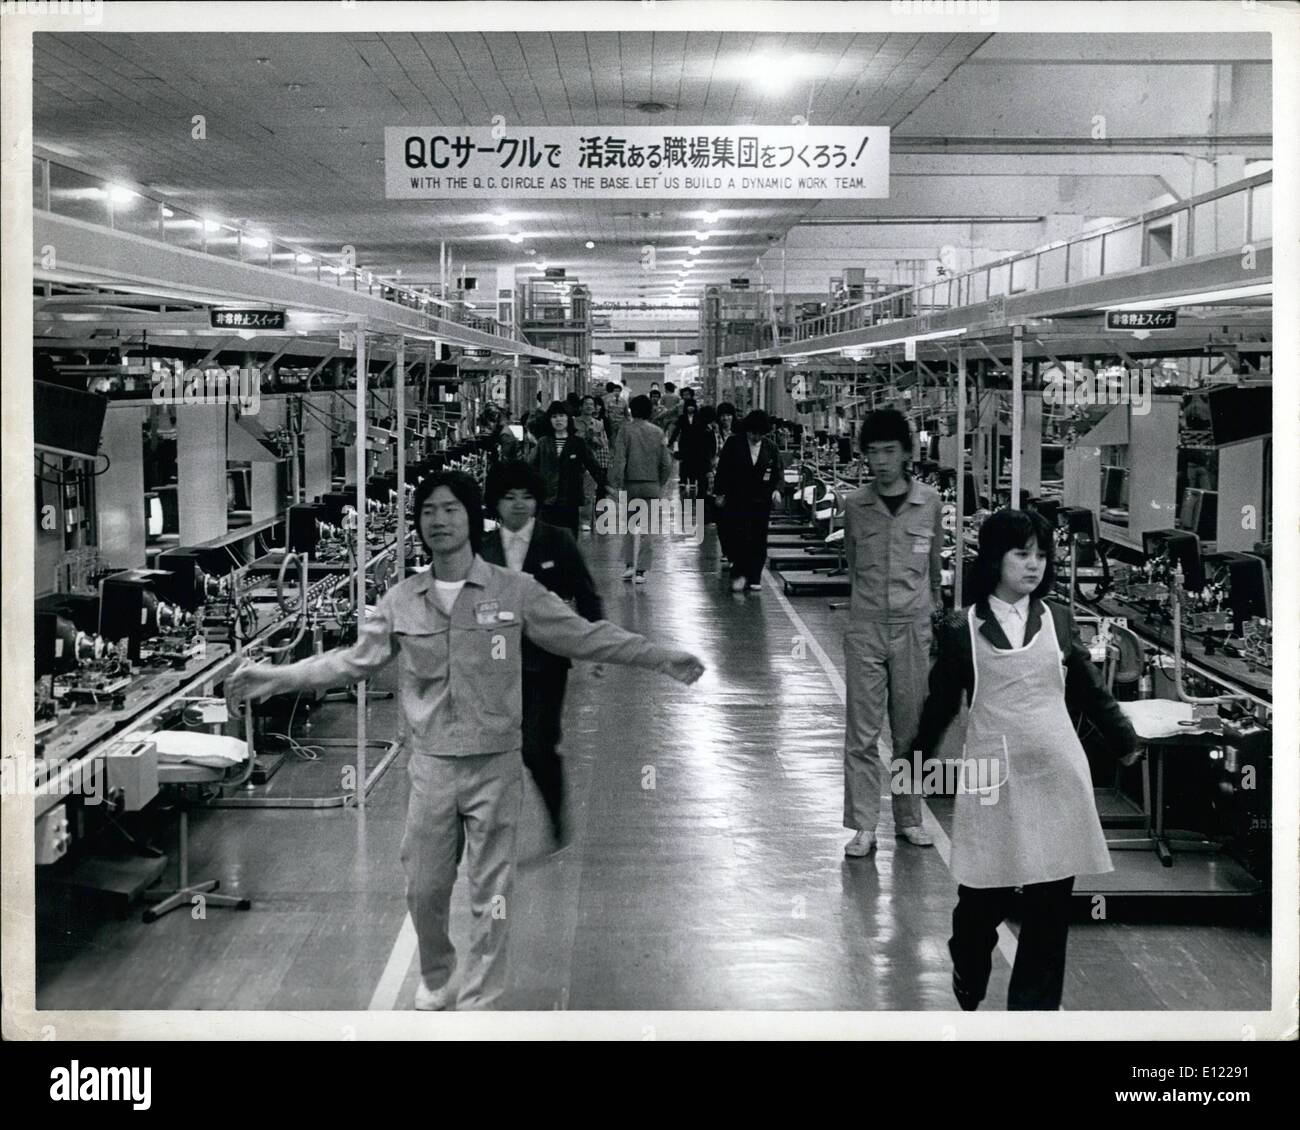 03. März 1982 - Fatsushitas Panasonic Color T. V.-Werk Osaka, Japan.:das Werk aki von Fatsushita Electric in Osaka Japan ist der Ort, an dem Panasonic Farbfernsehgeräte produziert werden. Foto-Showsw okers Nehmen Sie eine zehn-minütige Übungspause. Stockfoto